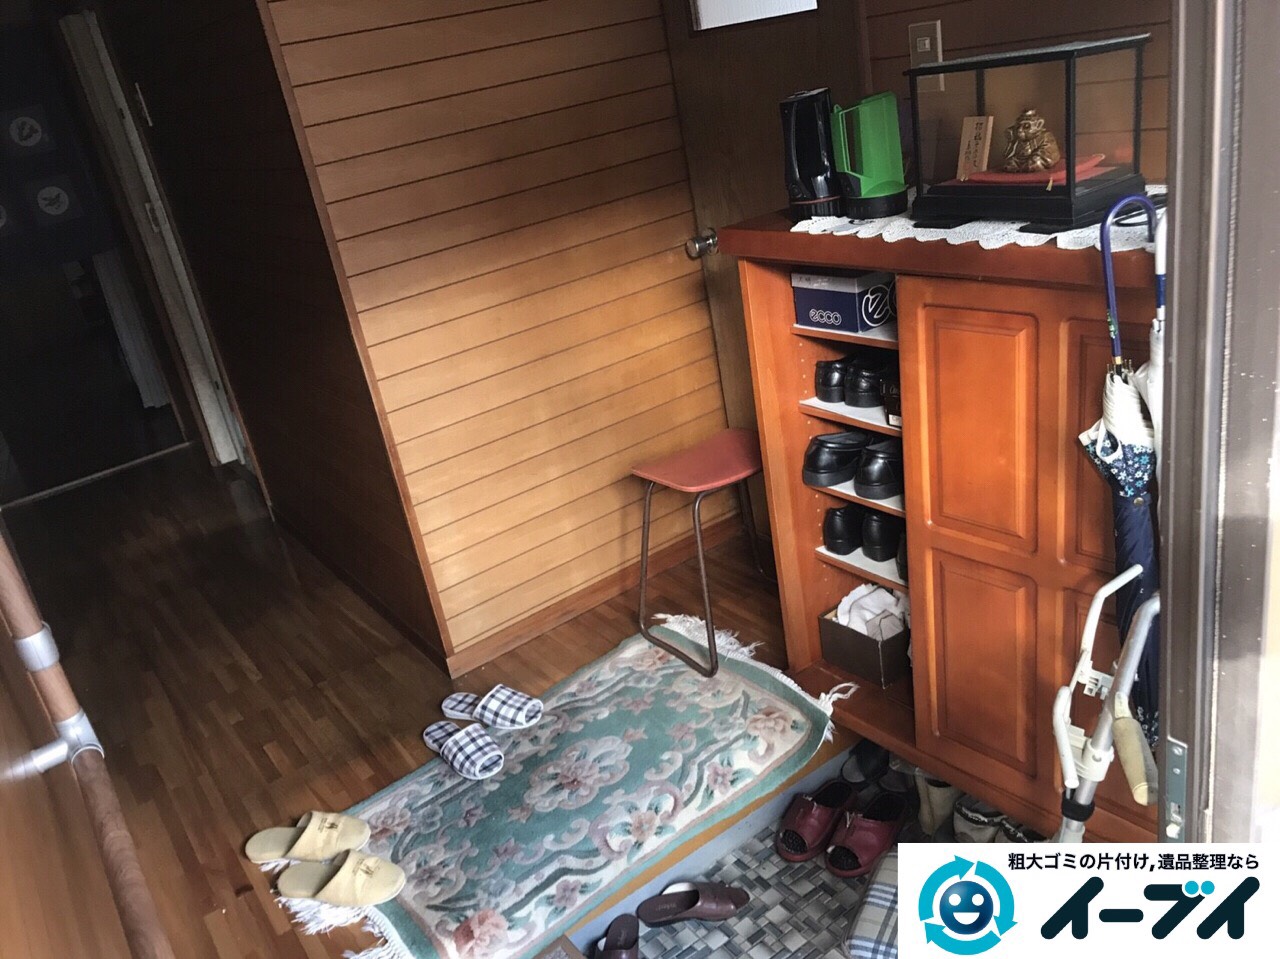 2017年4月13日大阪府大東市で引越しに伴い家具処分や引越しゴミを片付けました。写真2